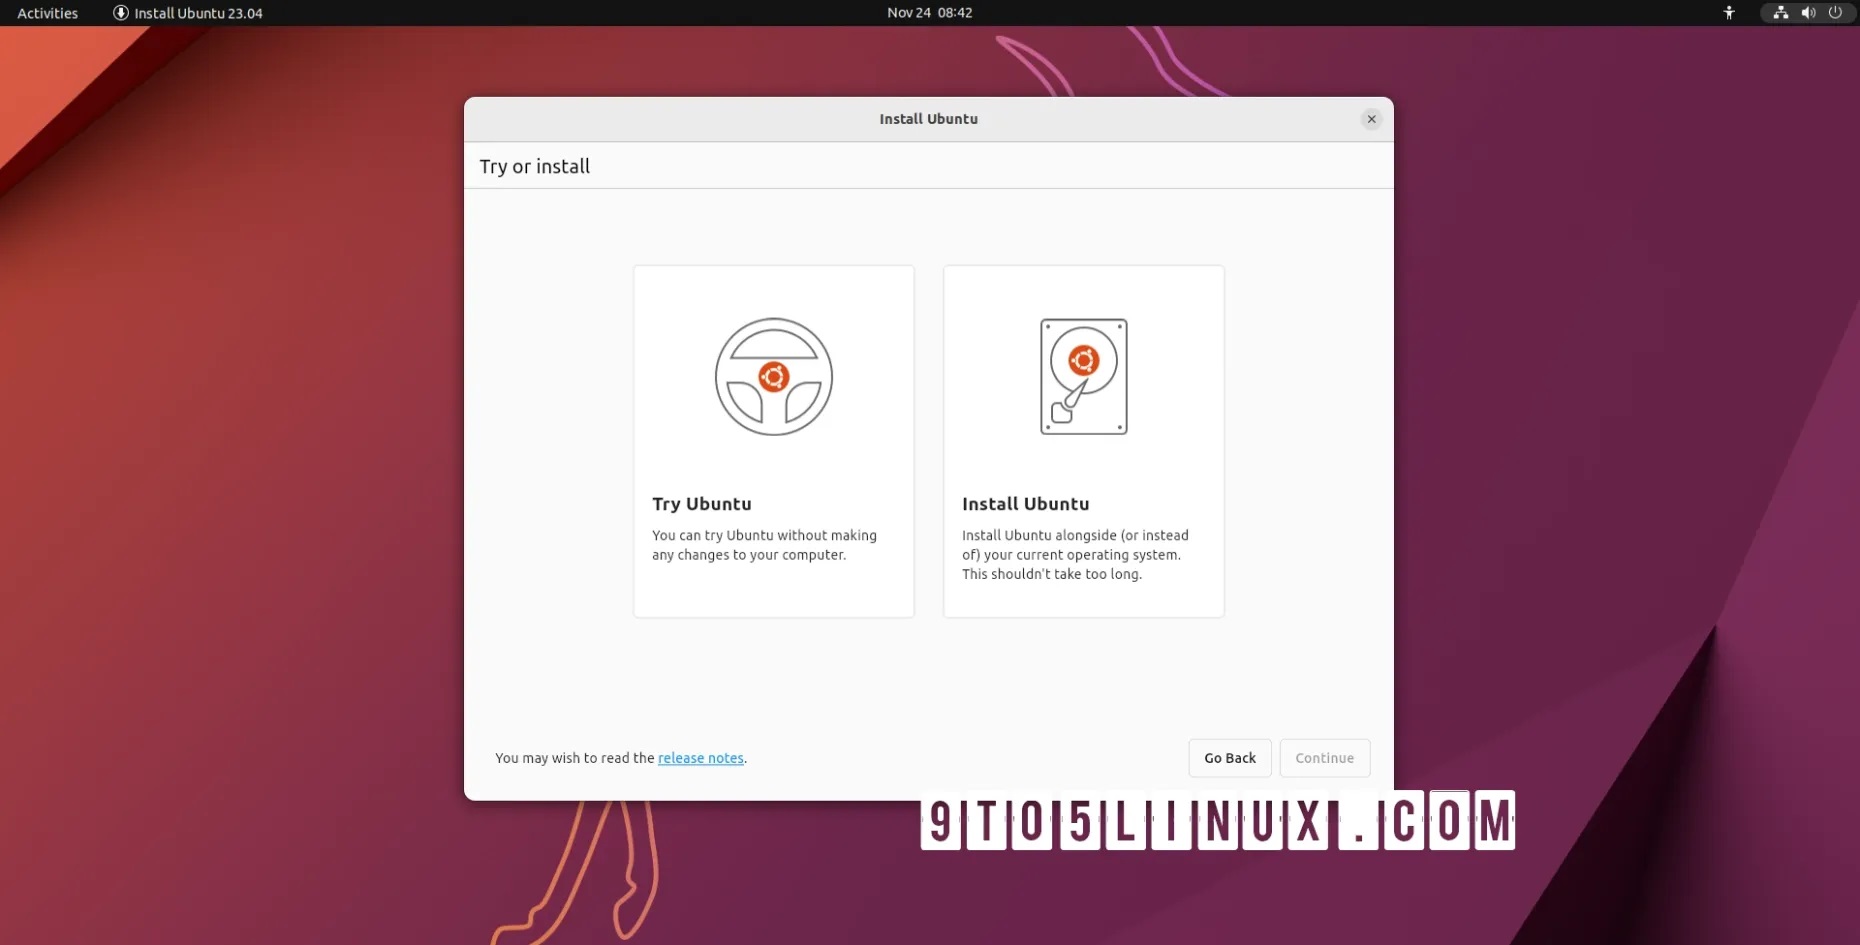 Ubuntu 23.04 (Lunar Lobster) 的日常构建现已可供下载